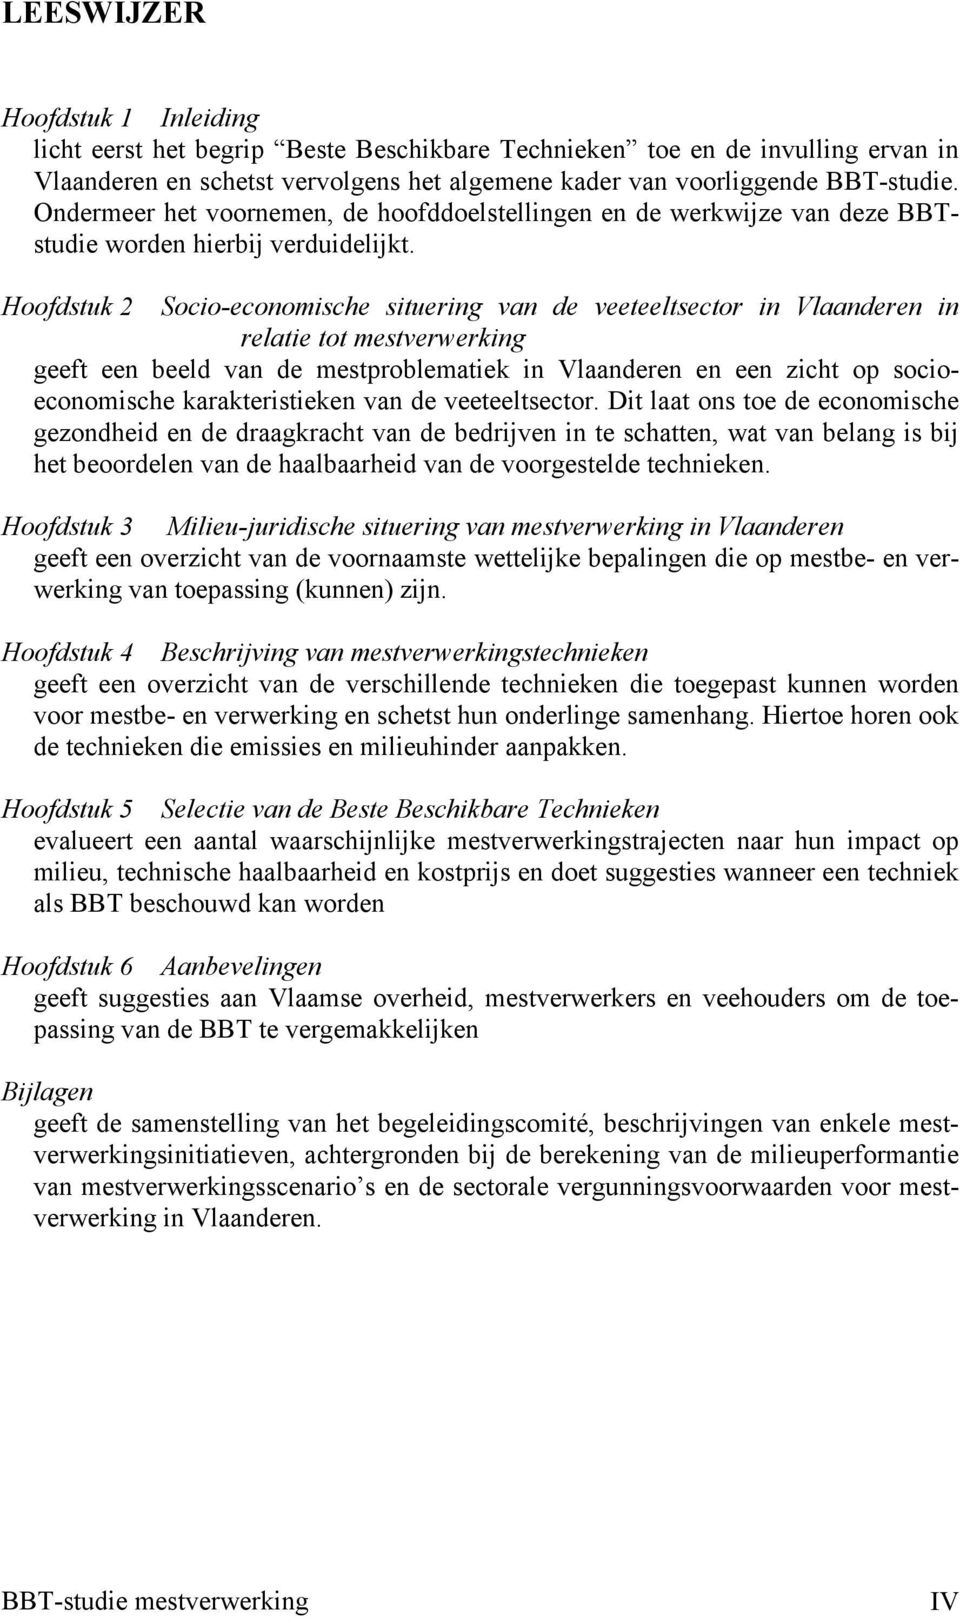 Hoofdstuk 2 Socio-economische situering van de veeteeltsector in Vlaanderen in relatie tot mestverwerking geeft een beeld van de mestproblematiek in Vlaanderen en een zicht op socioeconomische